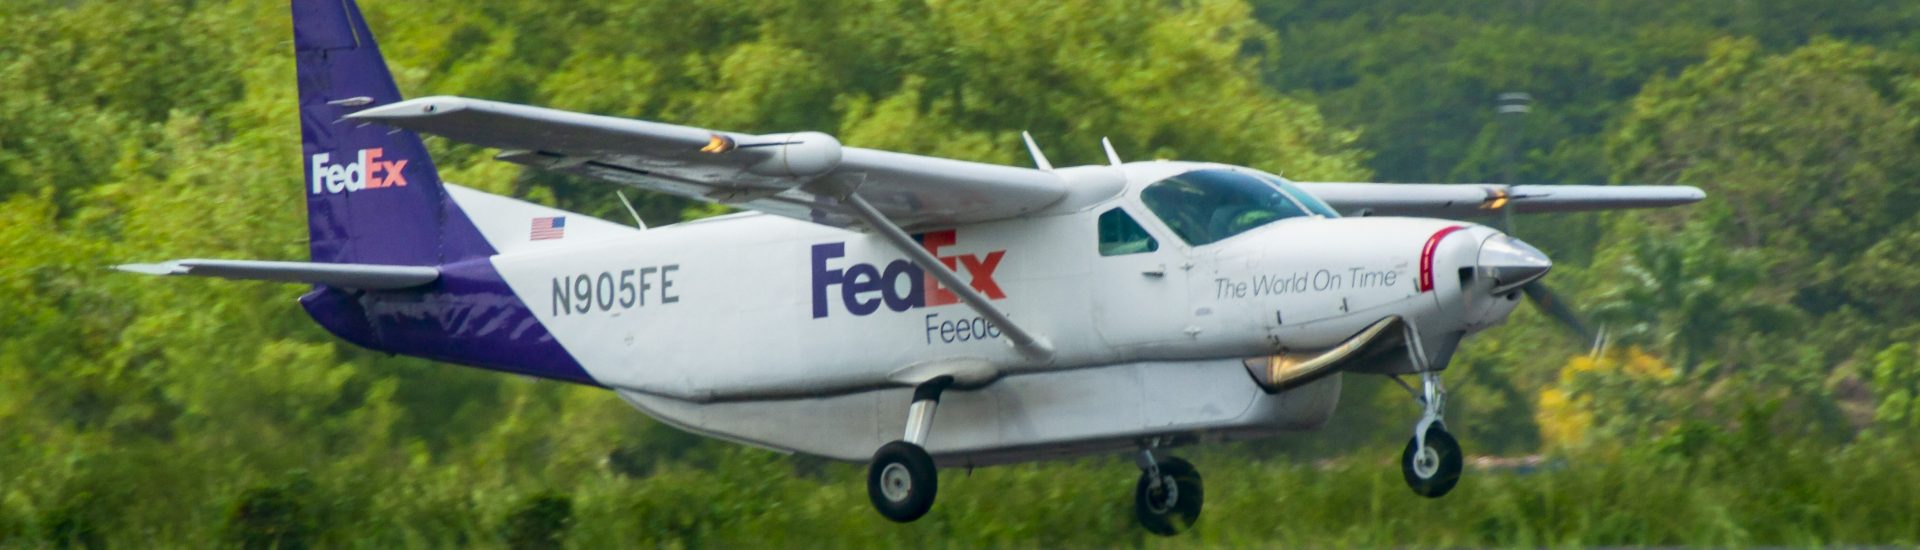 Cessna 208B Fedex Feeder N905FE